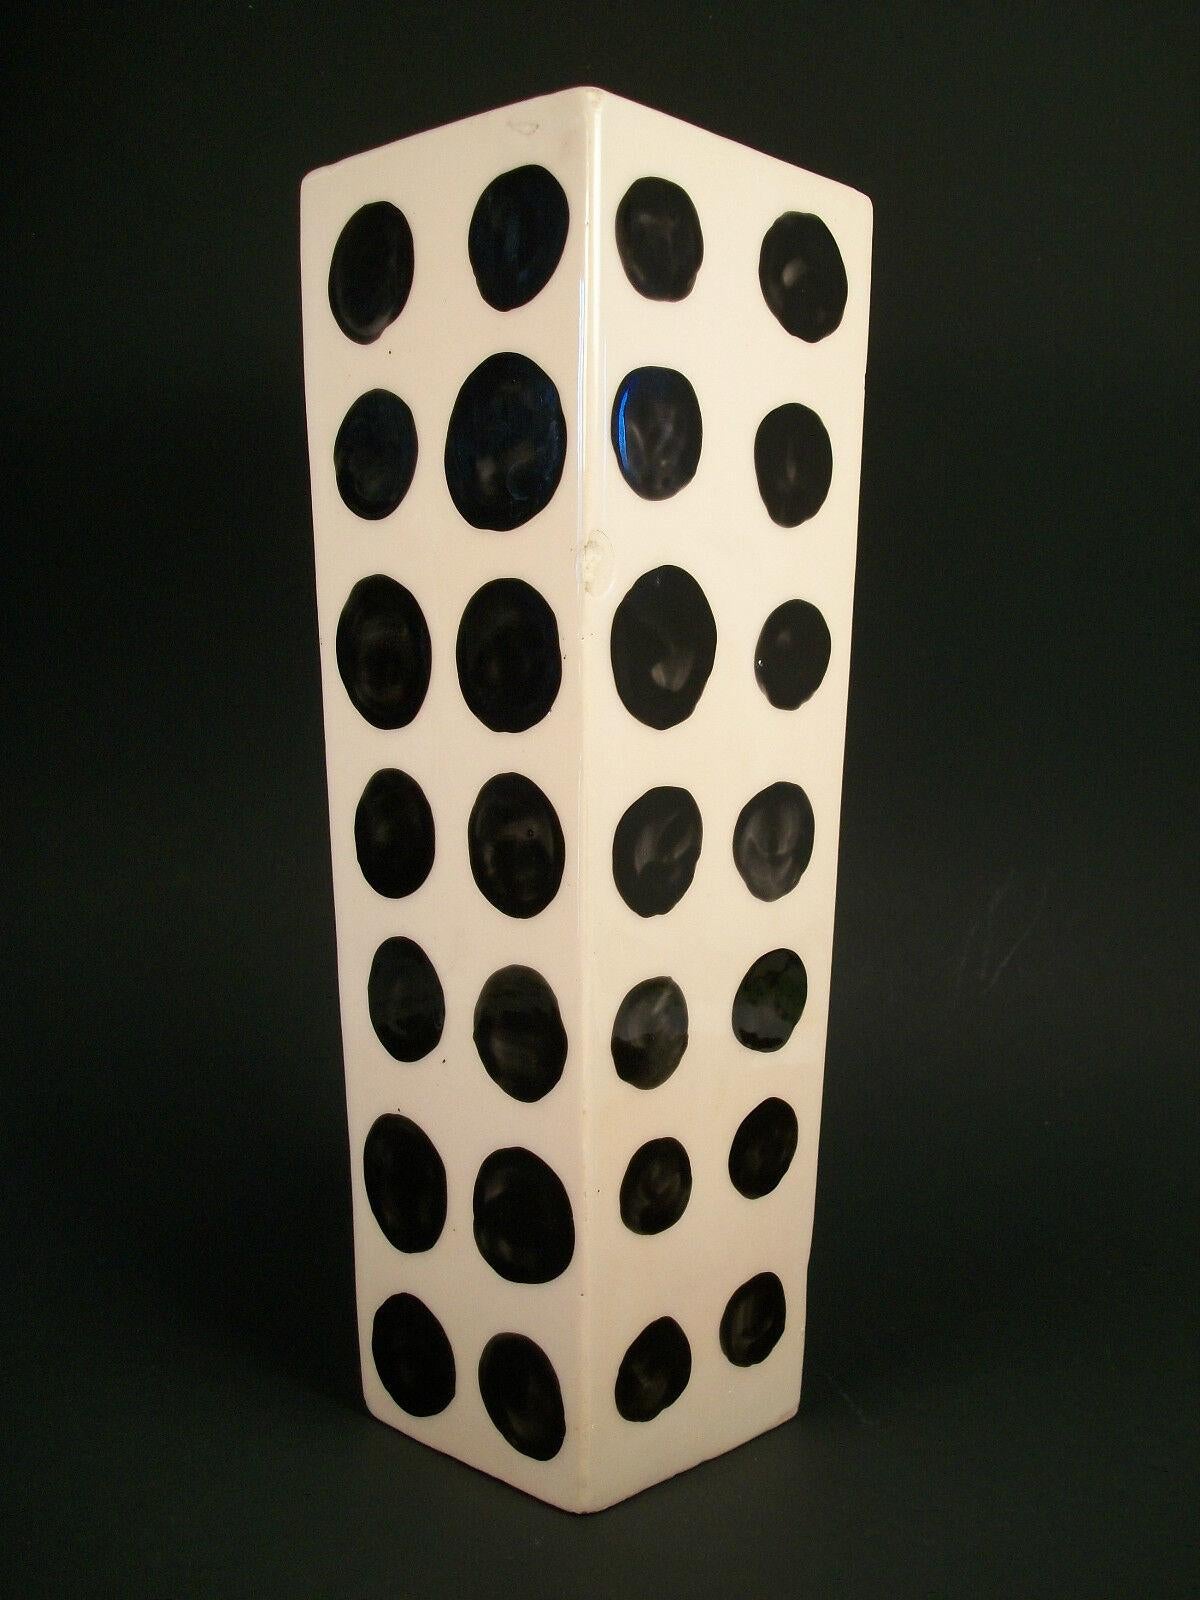 Vase peint à la main en poterie de studio du milieu du siècle dernier - formé sur une dalle - glaçure de couleur crème et points noirs peints à la main sur les quatre côtés - non signé - vers les années 1970.

Assez bon état vintage - éclats de